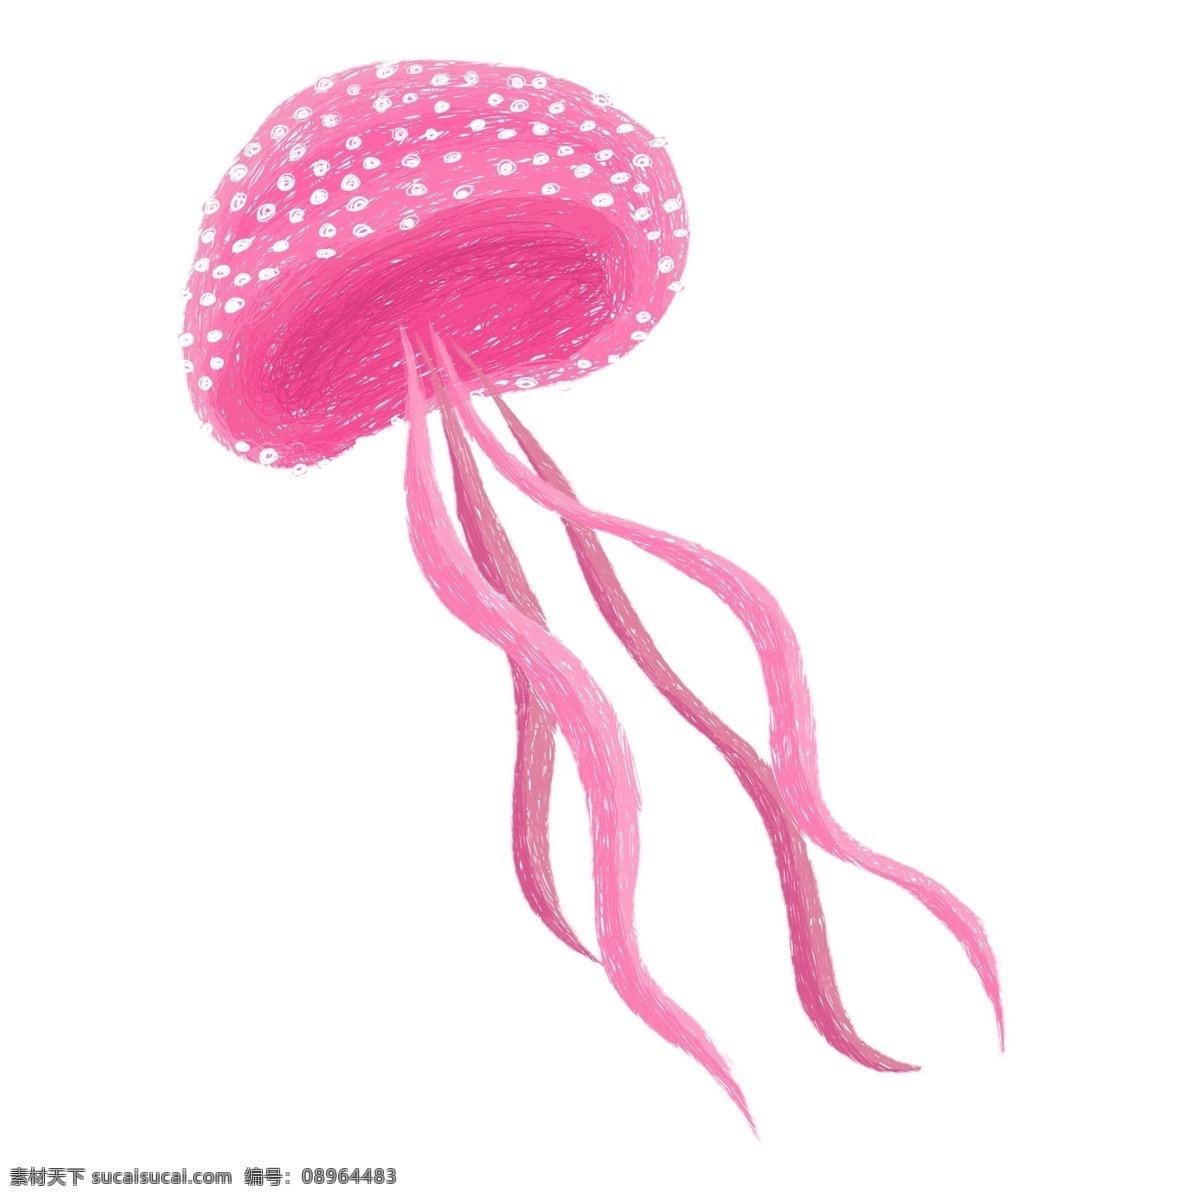 粉色 线圈 画 水母 插画 卡通 海洋生物 水母设计 线圈印象